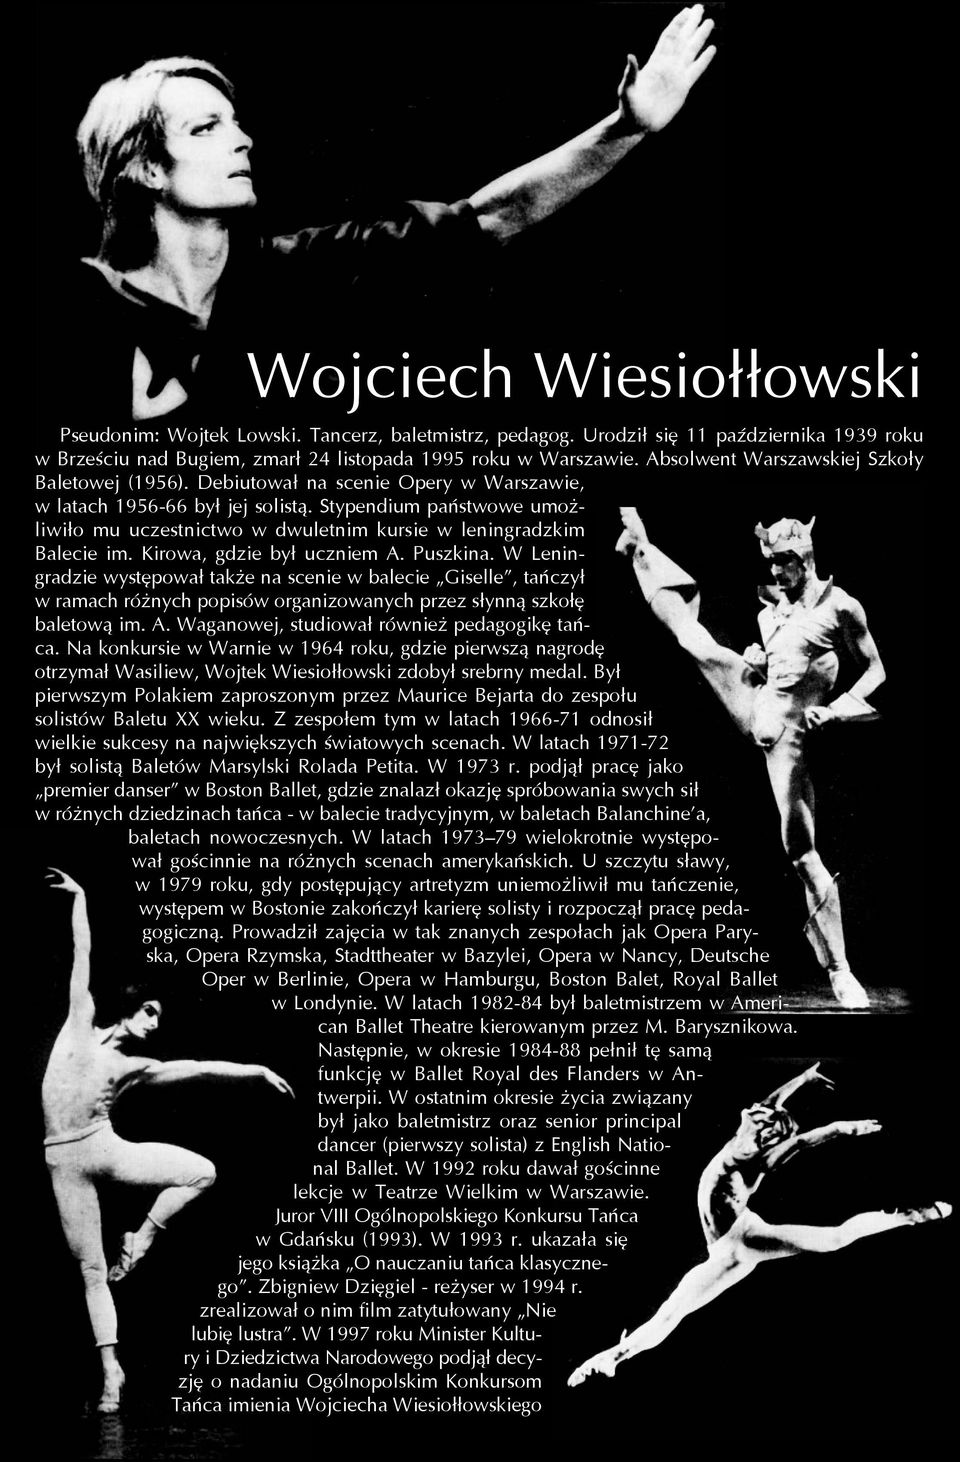 Debiutował na scenie Opery w Warszawie, w latach 1956-66 był jej solistą. Stypendium państwowe umożliwiło mu uczest nictwo w dwuletnim kursie w leningradzkim Balecie im. Kirowa, gdzie był uczniem A.